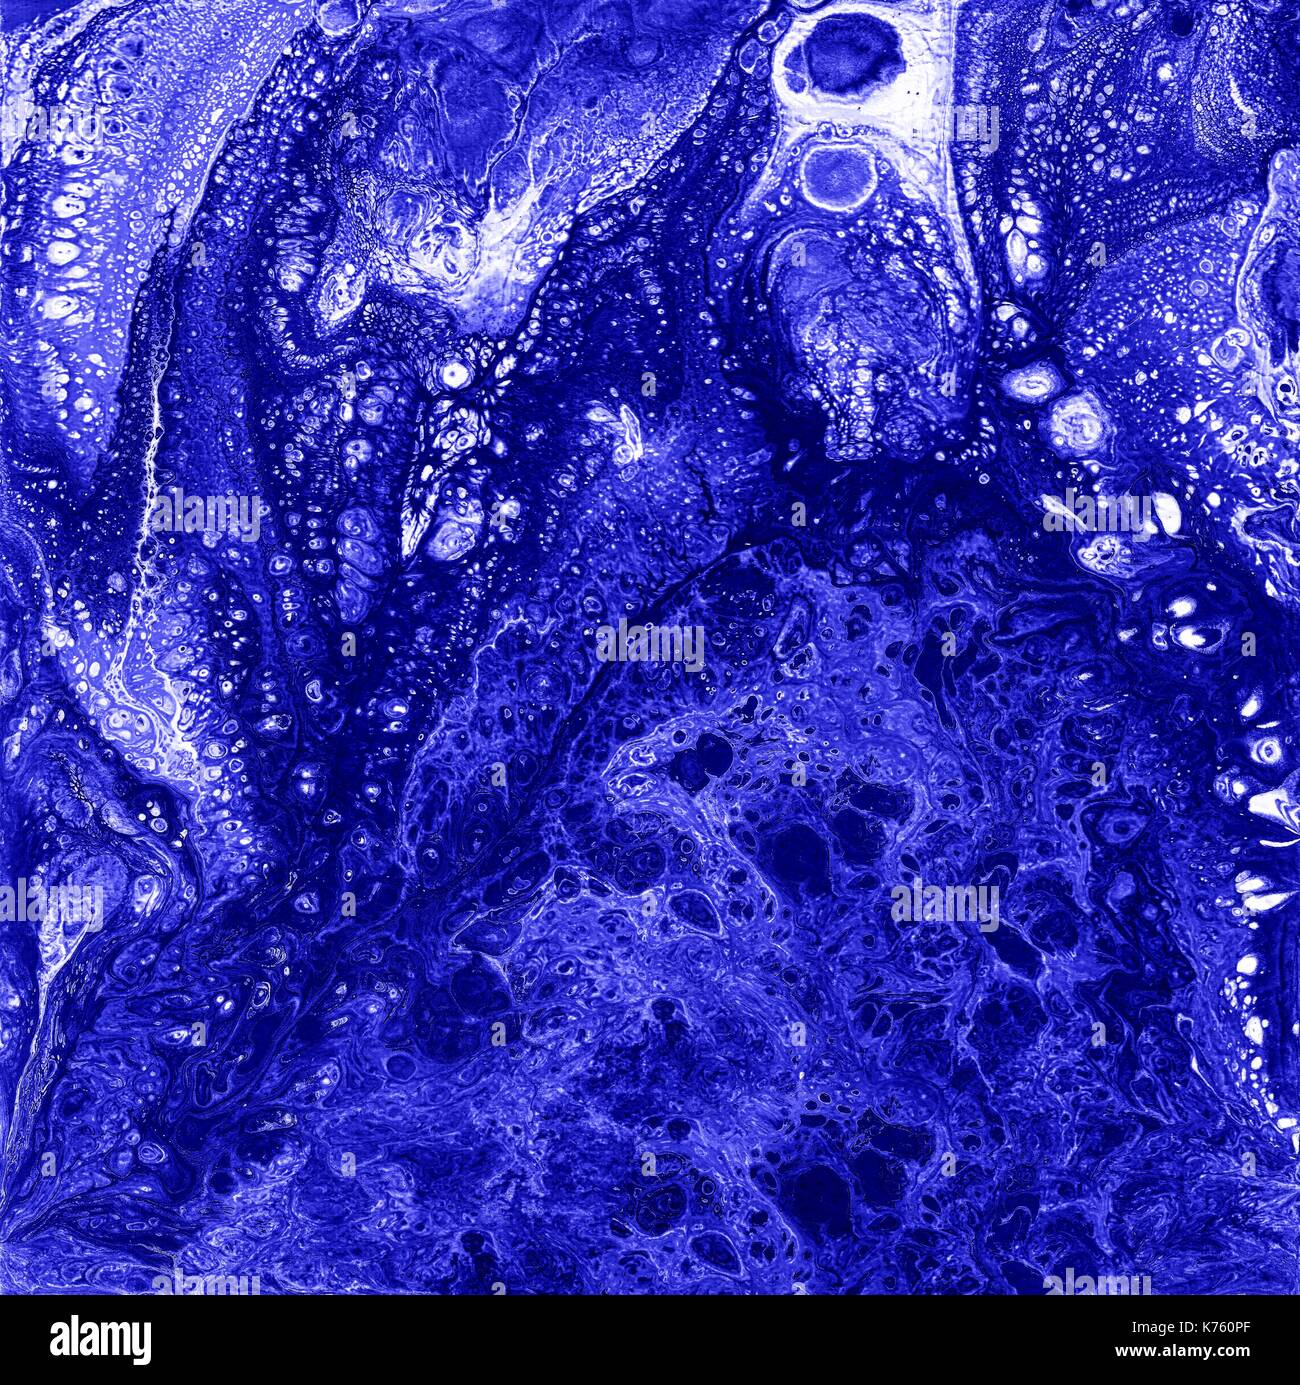 Liguid Aquarell und Tusche abstrakte farbige Malerei. Nasse keuchte Illustration, abstrakten Hintergrund blaue Farbe und Tapeten. Stockfoto